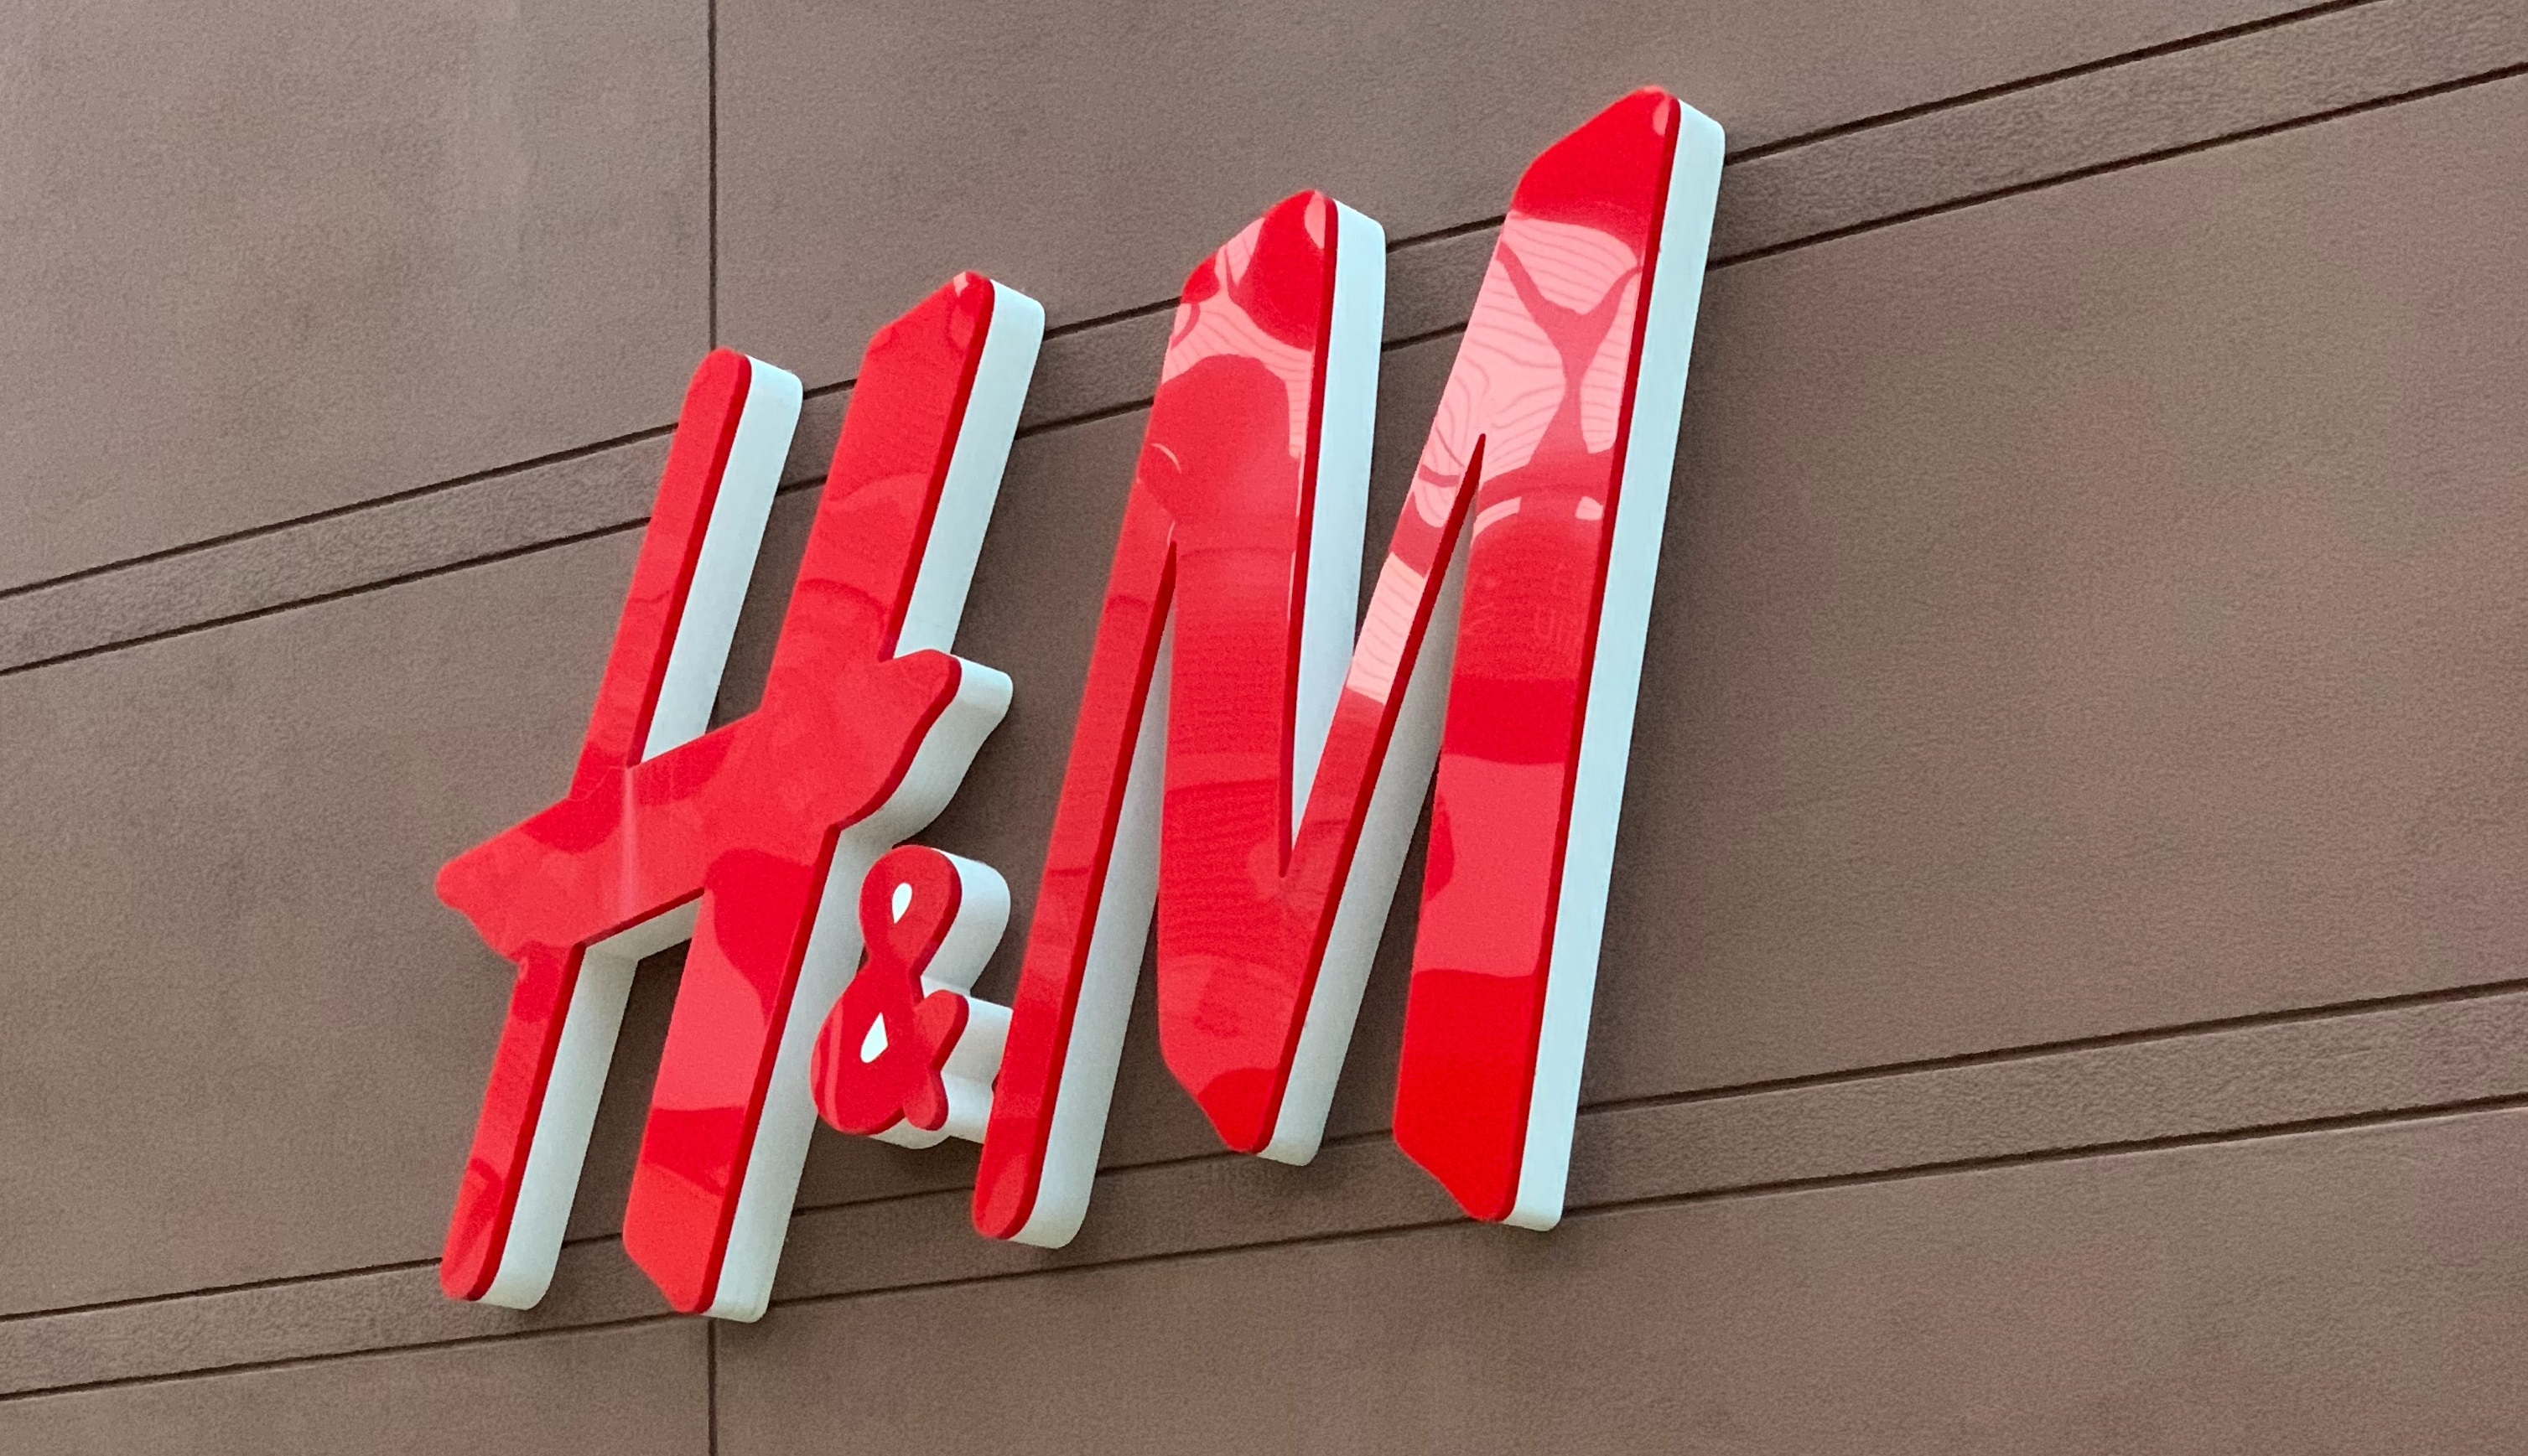 H&M quiere potenciarse en América Latina / Foto: Pexels